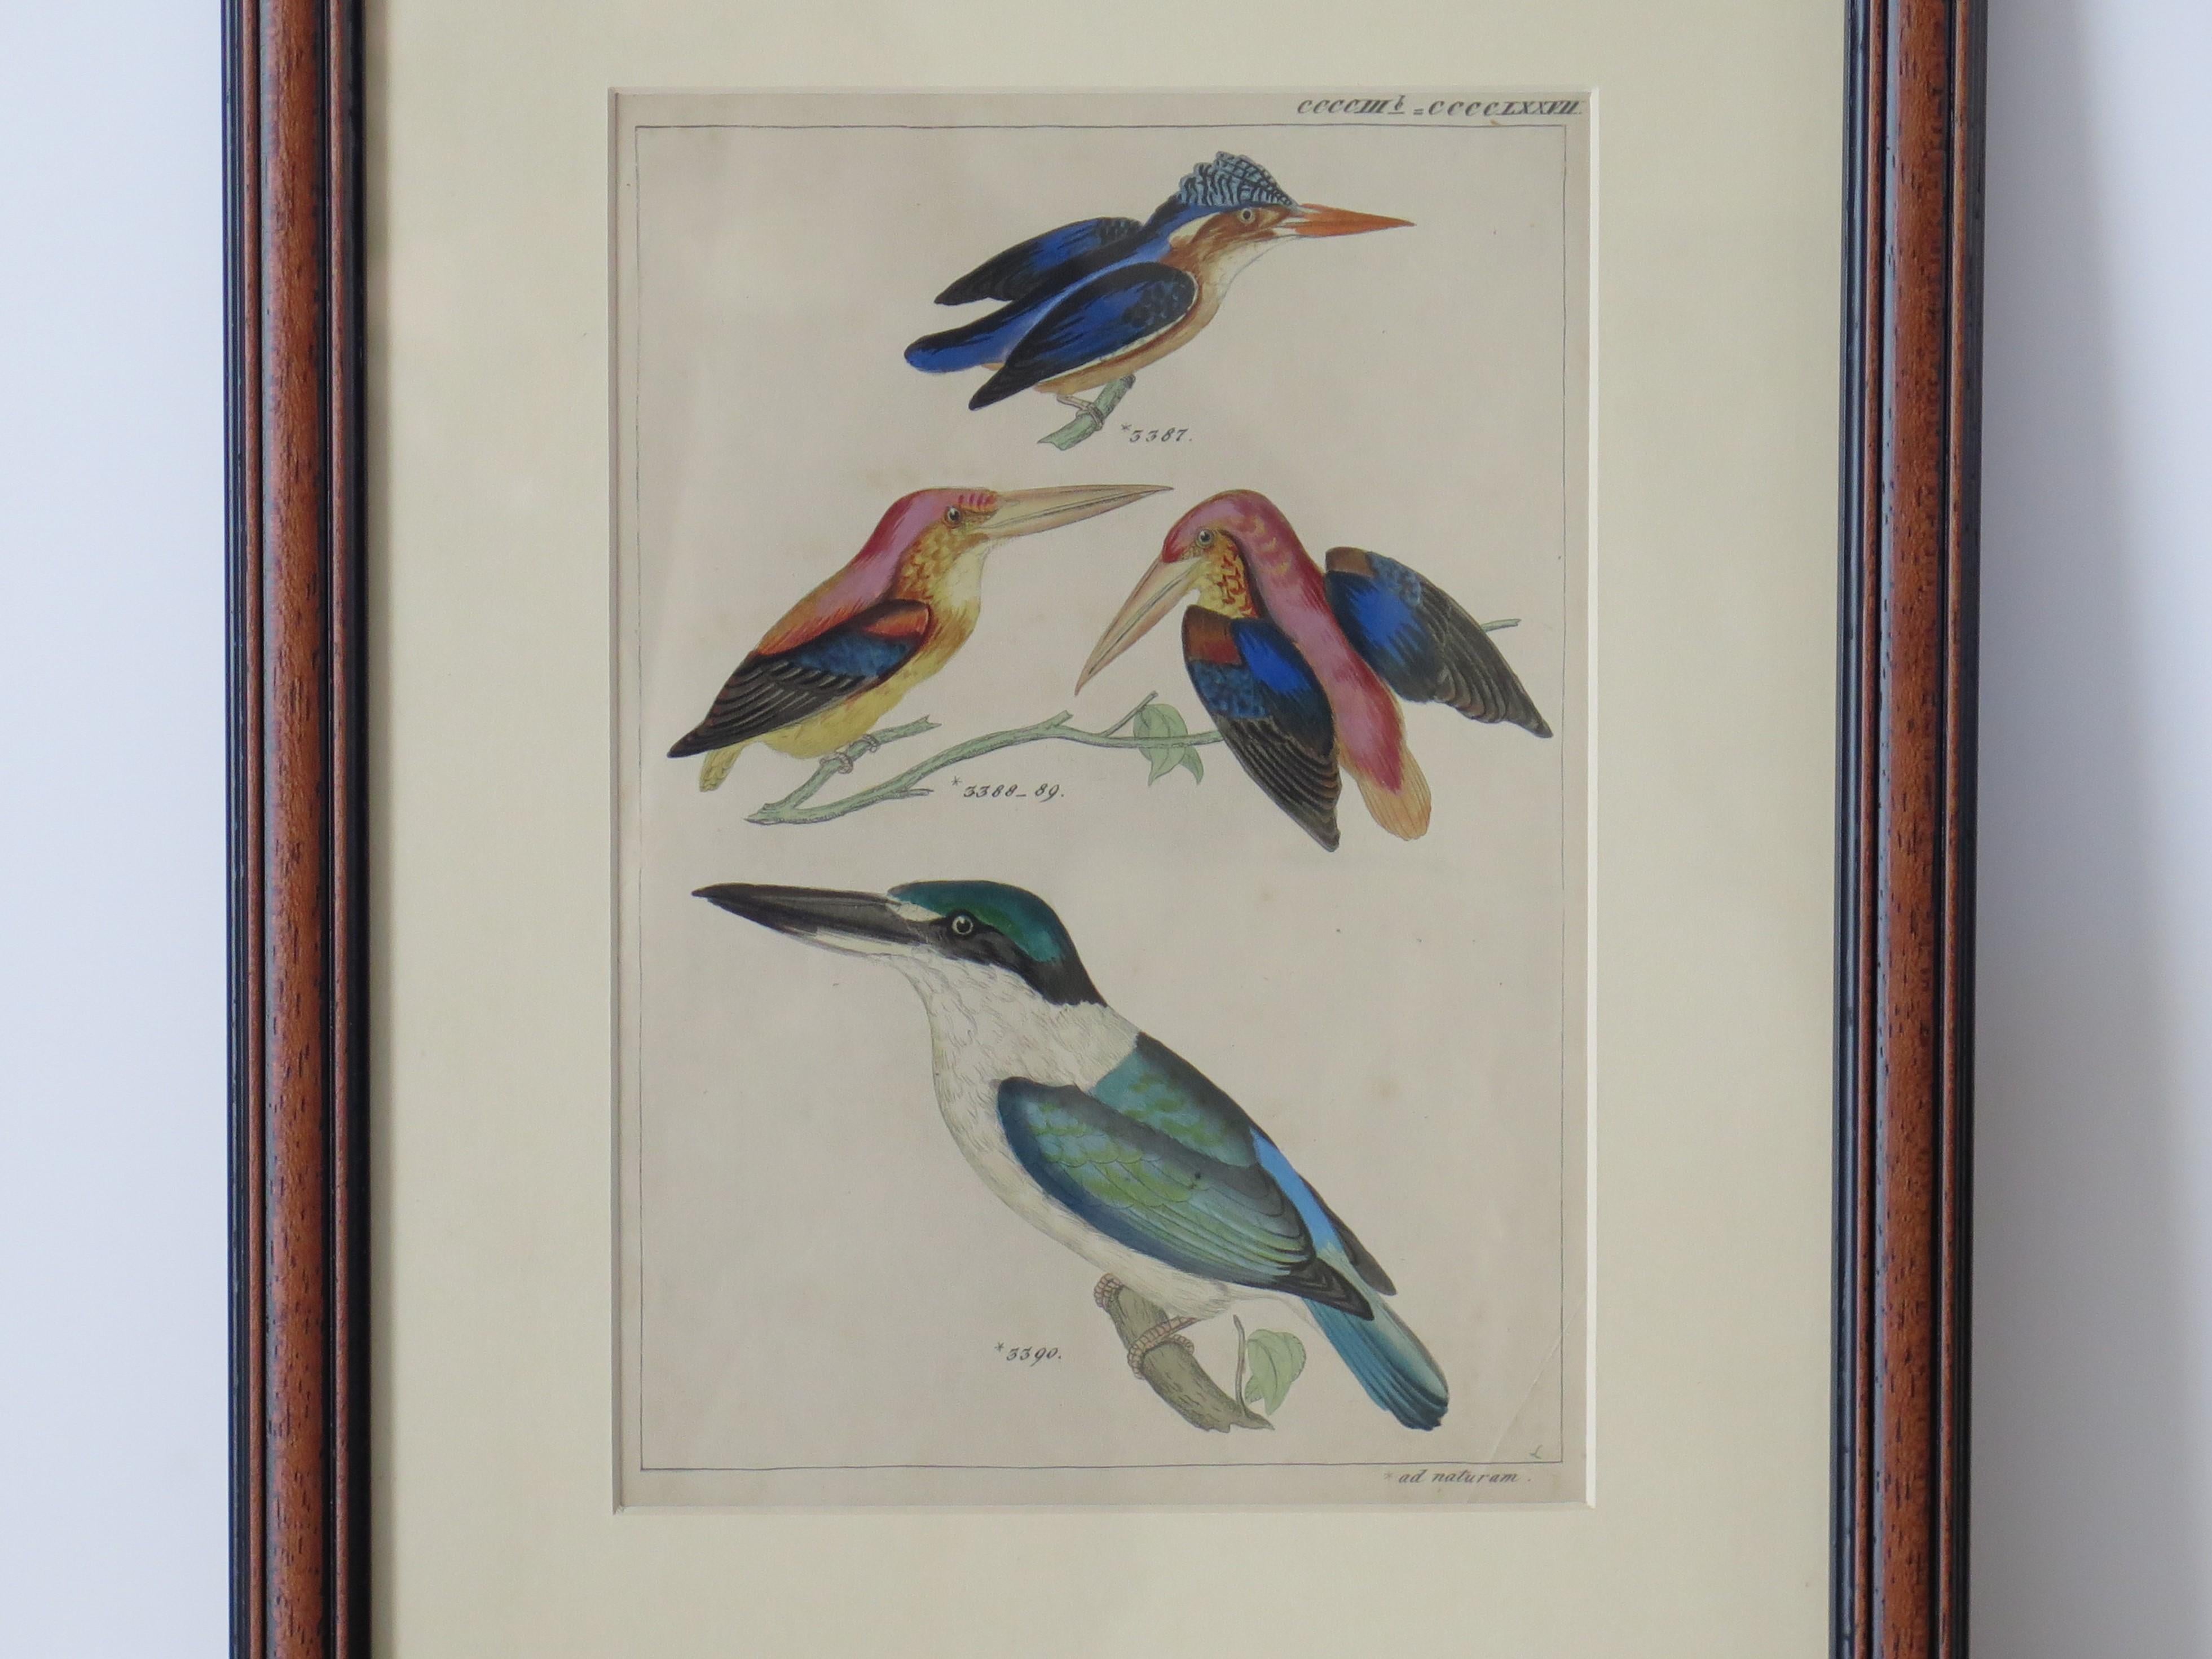 Dies ist eine handkolorierte gerahmte Gravur einer Studie von Kingfisher Vögel alle in der Art der Audubon Birds of America und aus der Mitte des 19. Jahrhunderts.

Die Studie zeigt vier Kingfisher, von denen drei verschiedene Arten mit einem